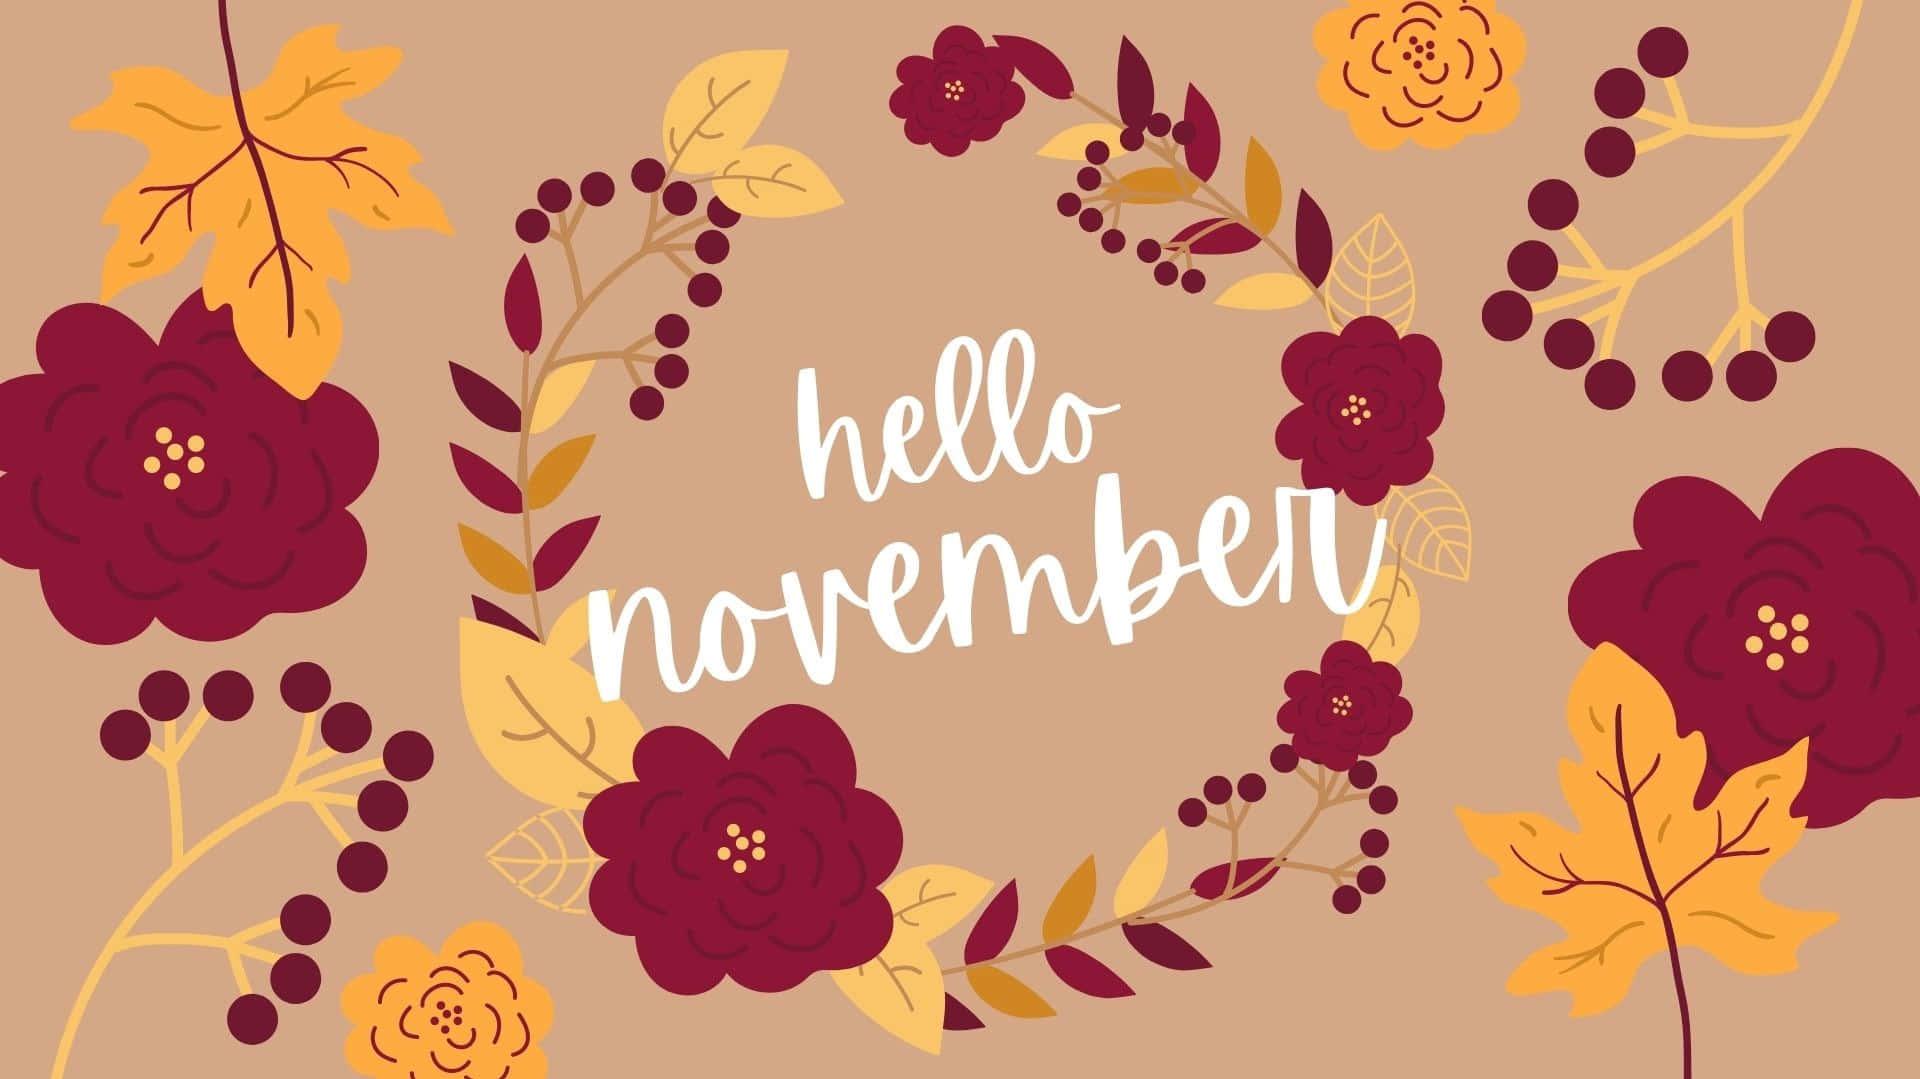 [65+] Cute November Wallpapers | WallpaperSafari